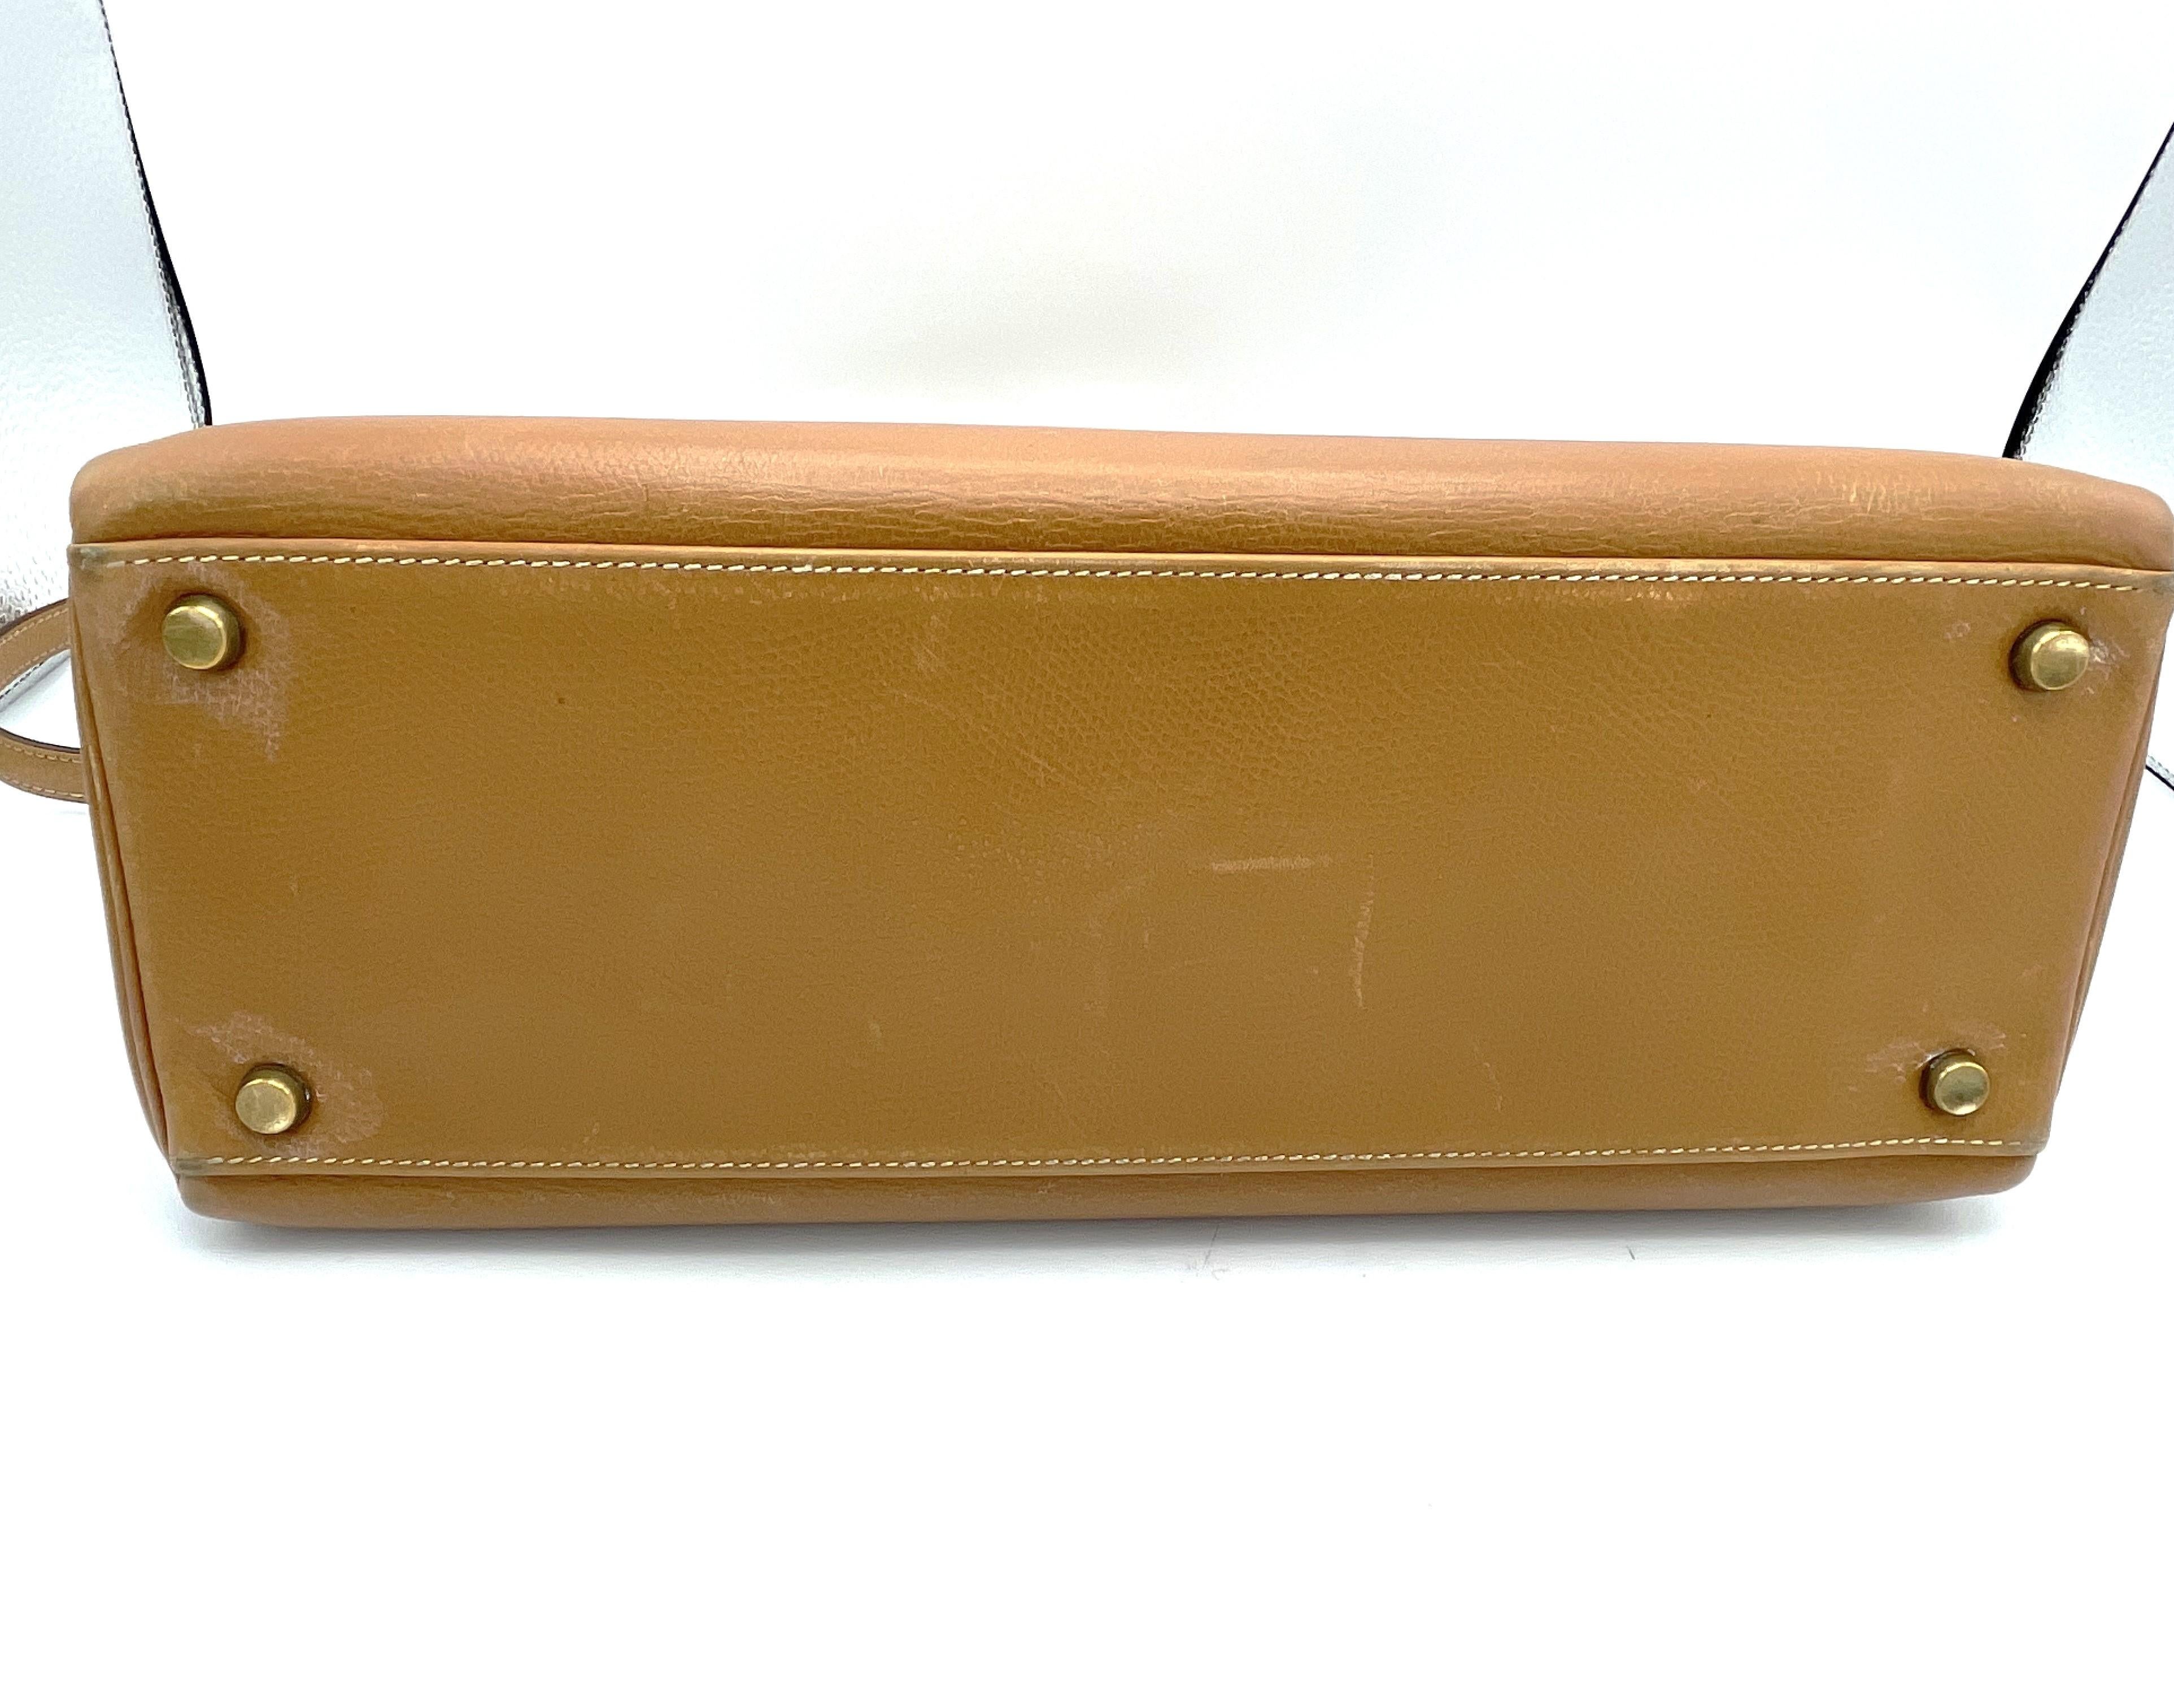 HERMÉS 2 way Kelly bag, Retourne,  32cm, Courchevel  Leather gold, 1982 - L   For Sale 3